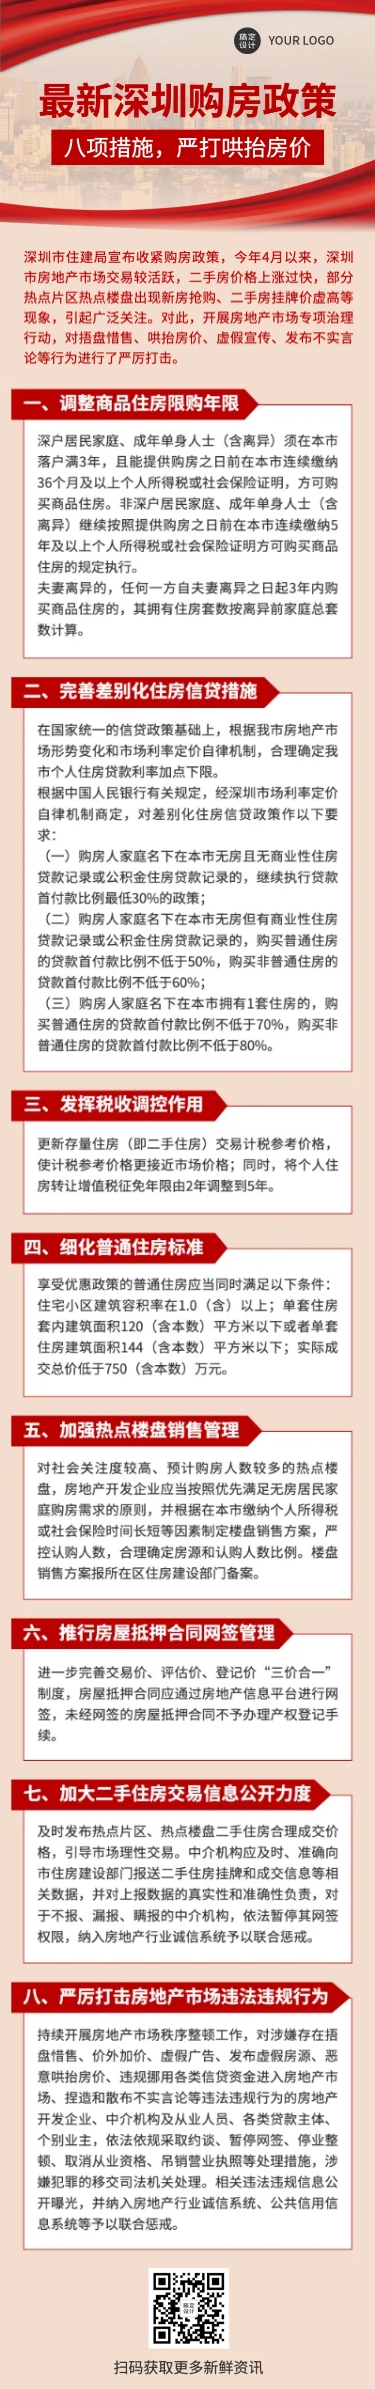 新闻政策解读党政融媒体文章长图